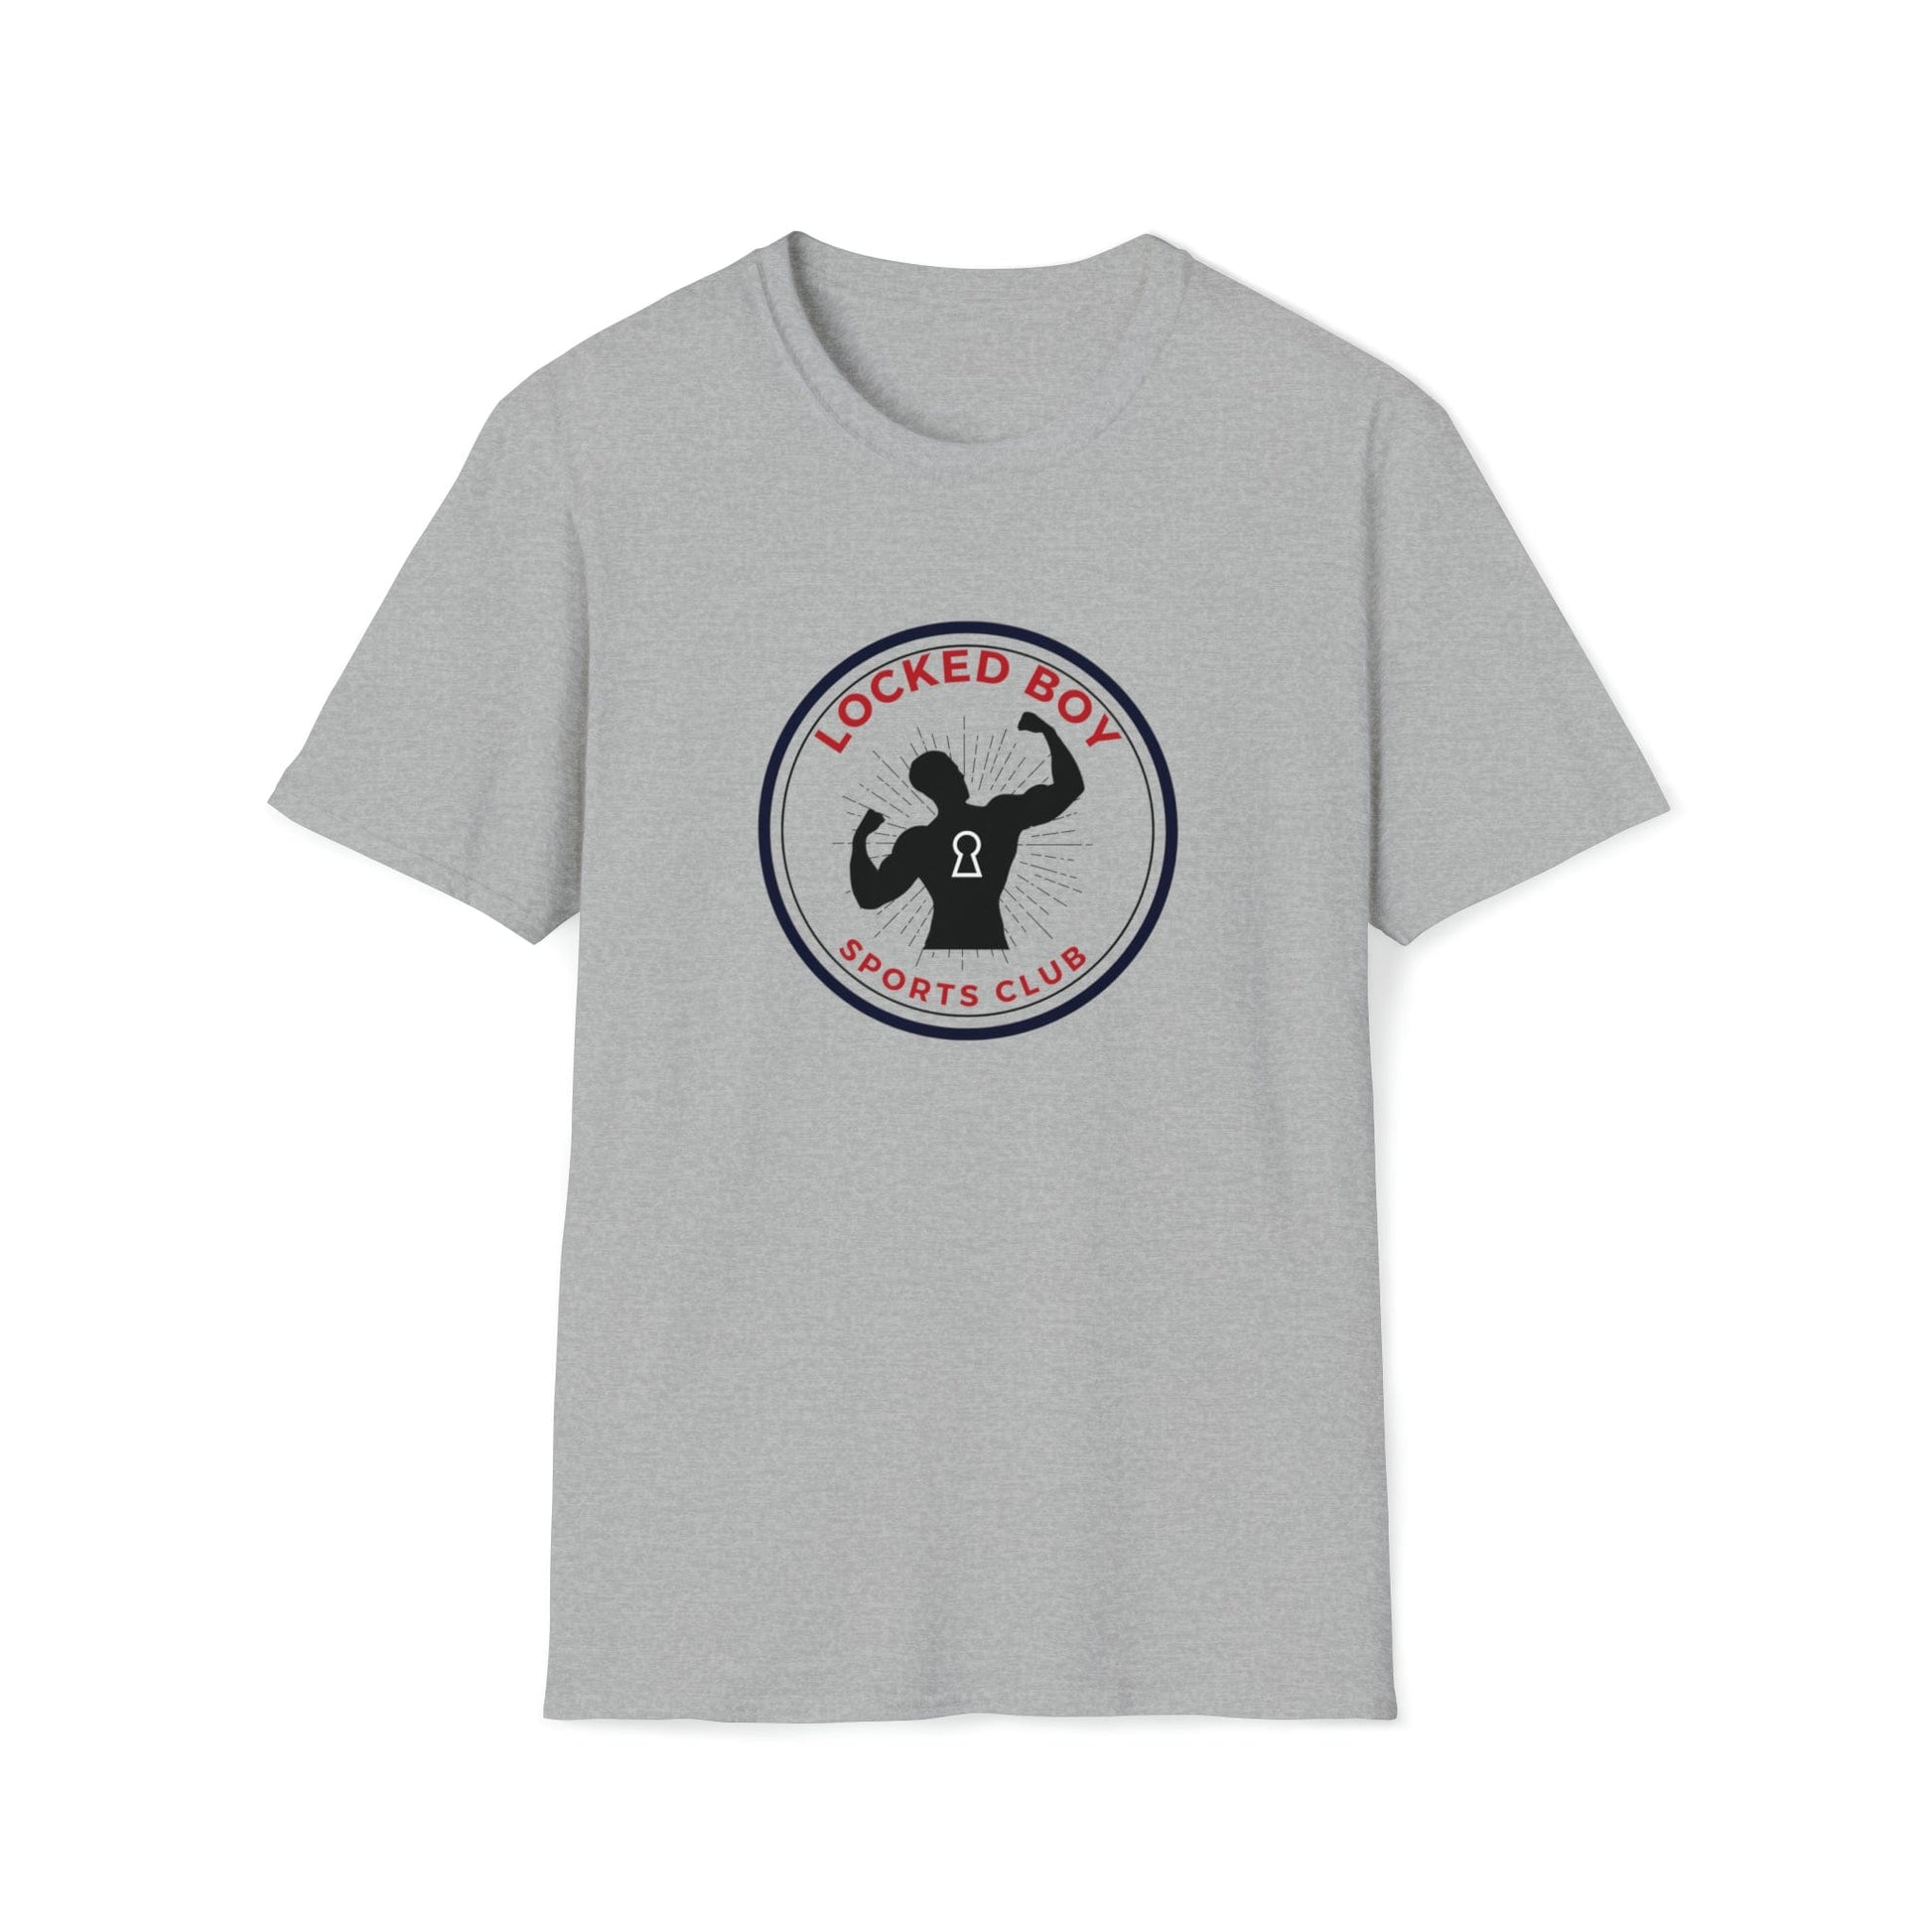 T-Shirt Sport Grey / S LockedBoy Sports Club - Chastity Tshirt LEATHERDADDY BATOR